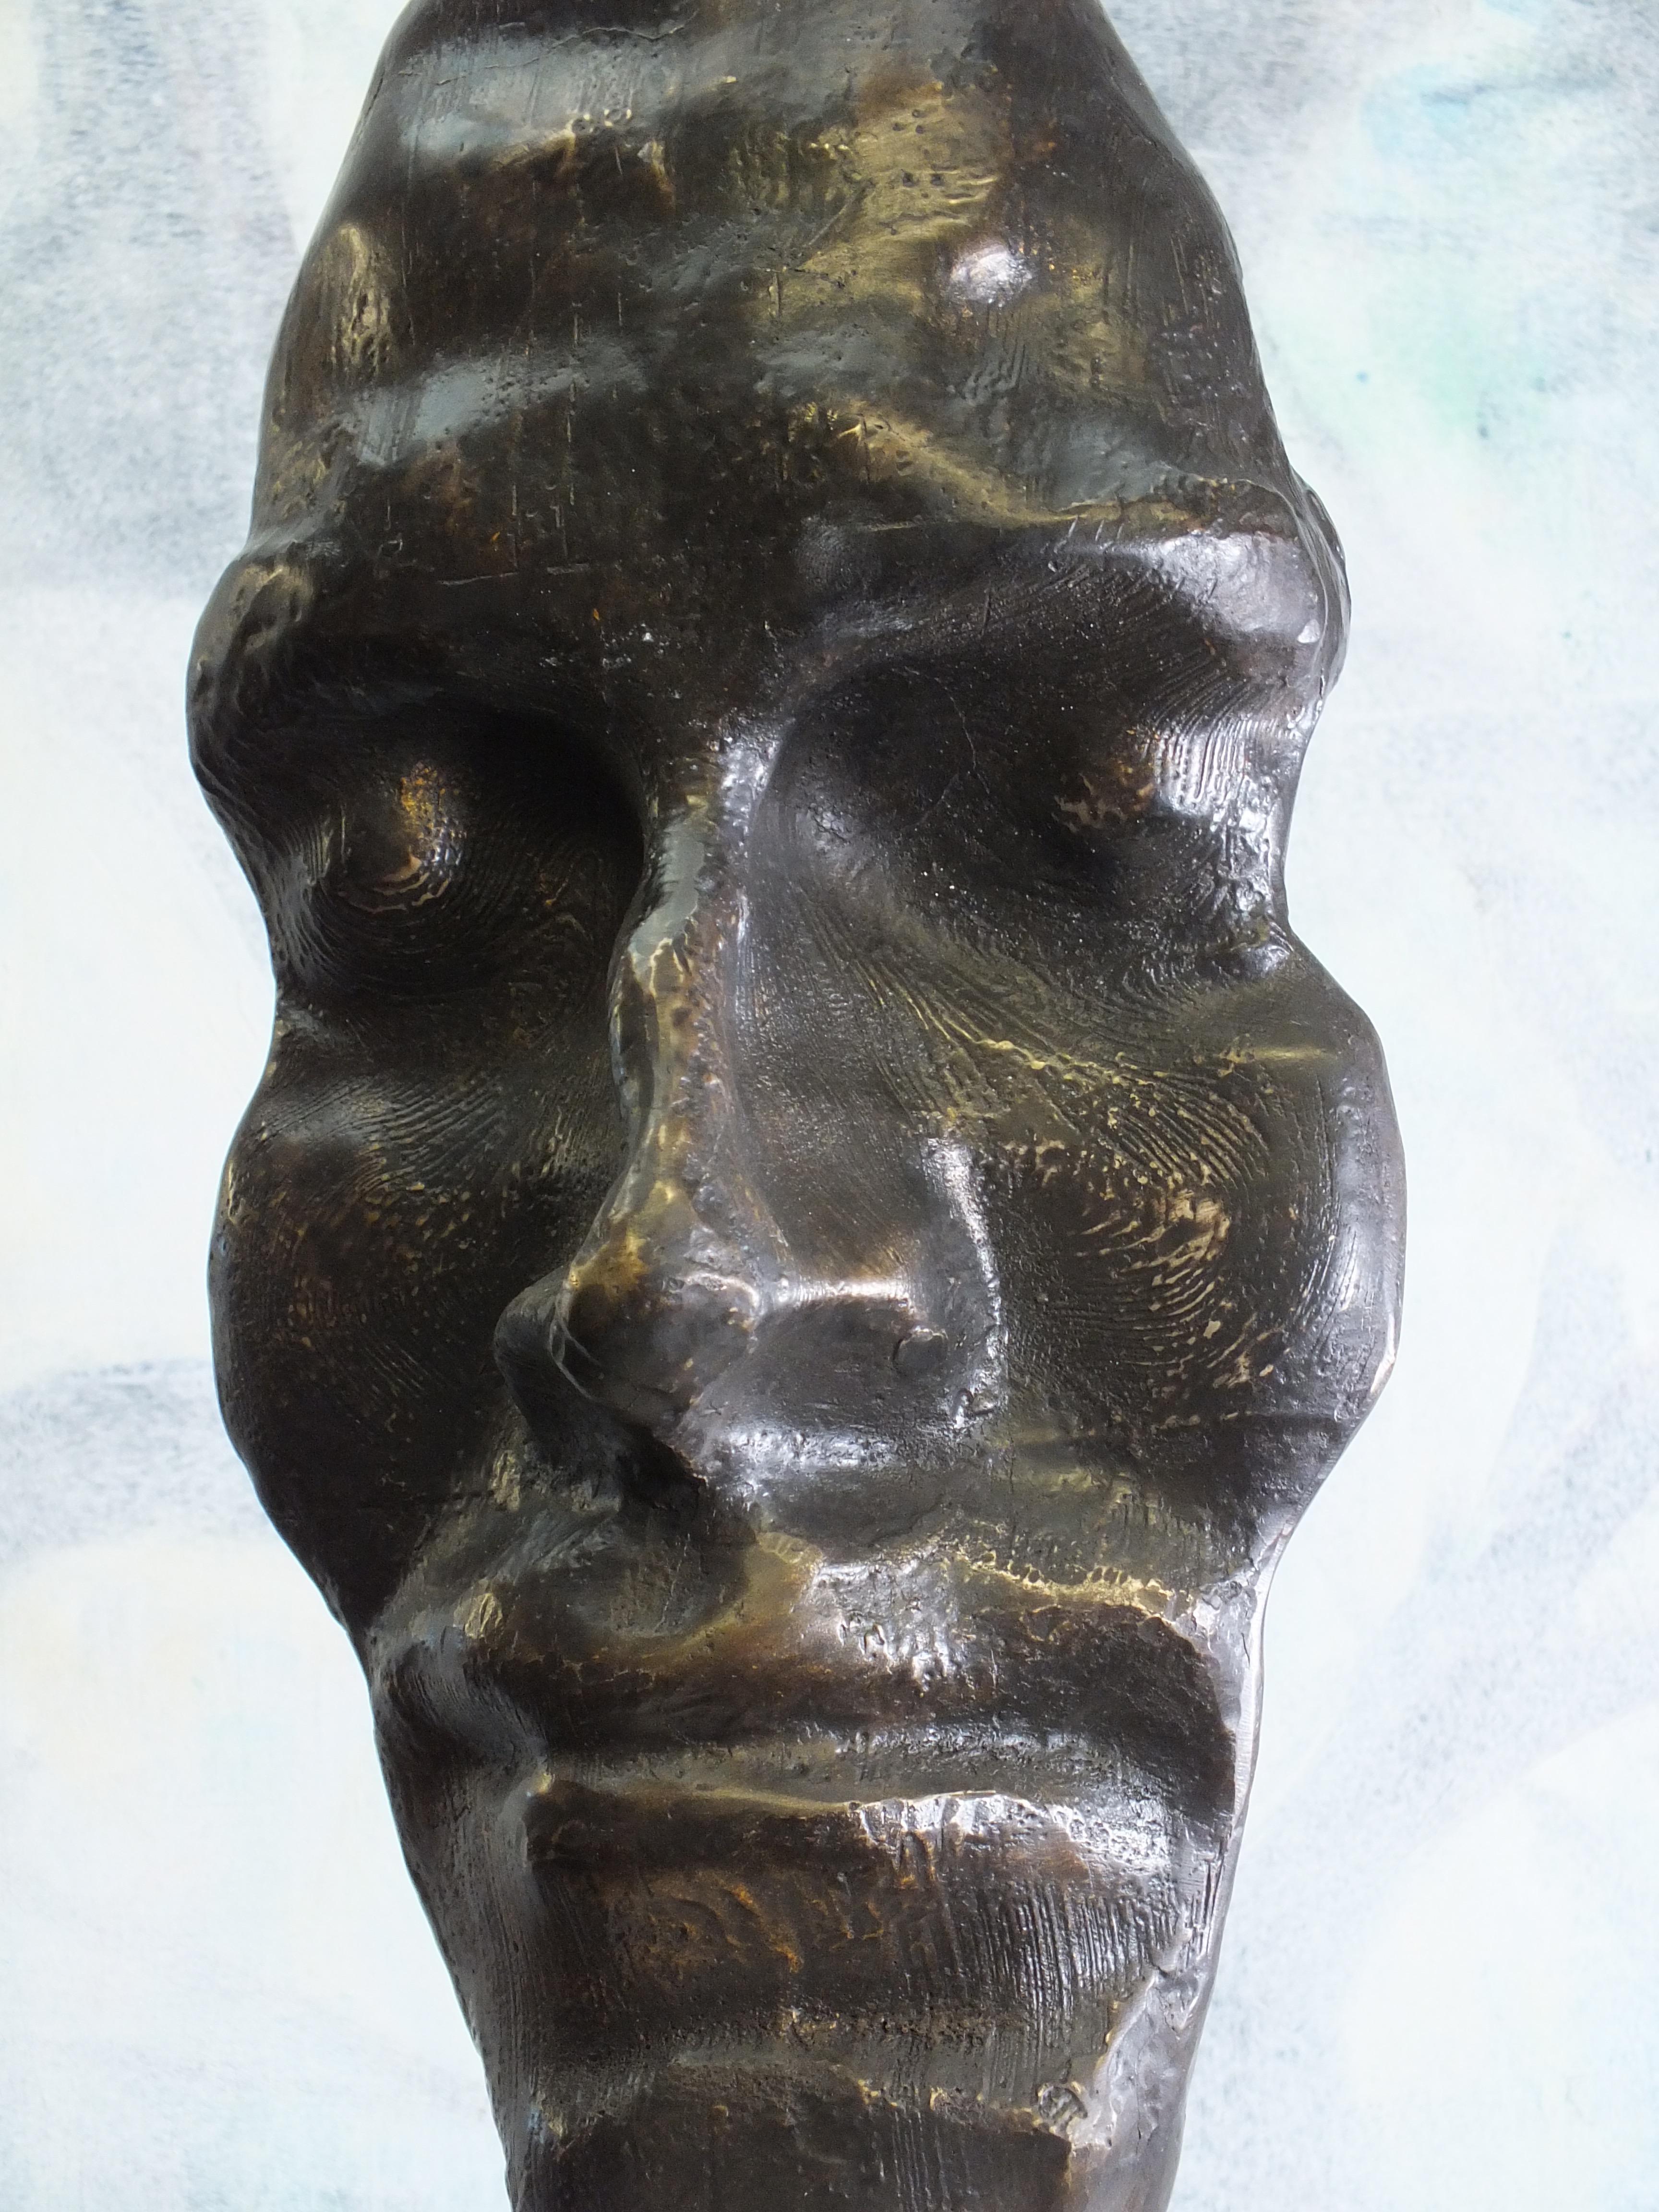 
Aus der Witness-Serie. Einzigartiges Stück

Bronze Größe cms. 41x19x16 plus Kalksteinsockel 18x18x14

Tim wurde in Derbyshire, England, geboren und war von klein auf auf die Natur eingestimmt. Er kam erst später zur Kunst und schmiedet seine